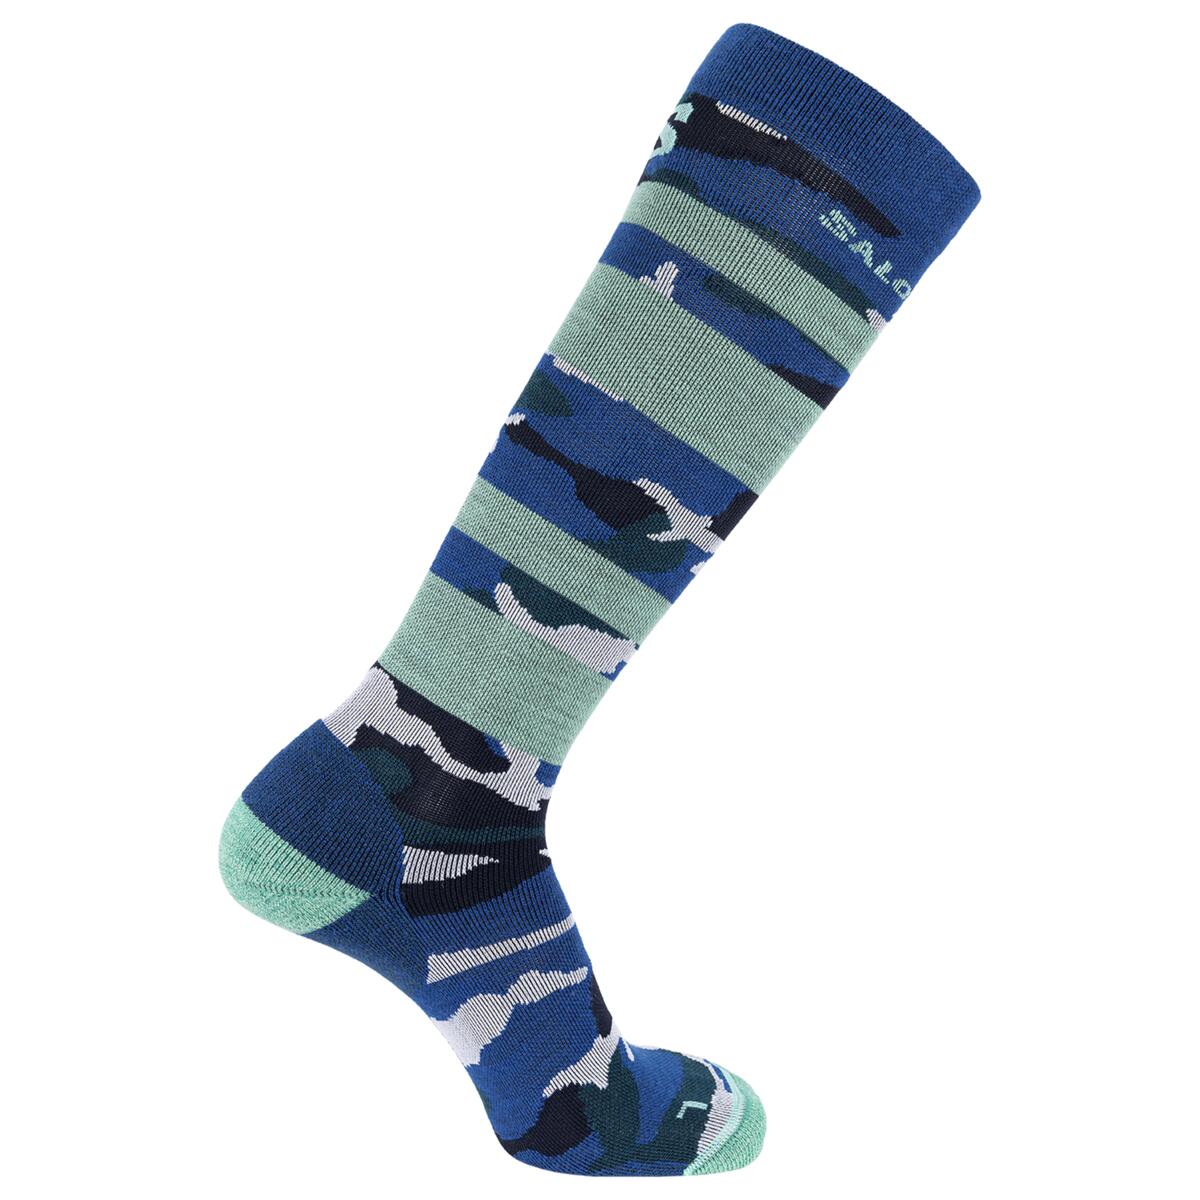 4: Salomon Qst Blank Socks (Farve: Blue/white/pacific, Størrelse: S)